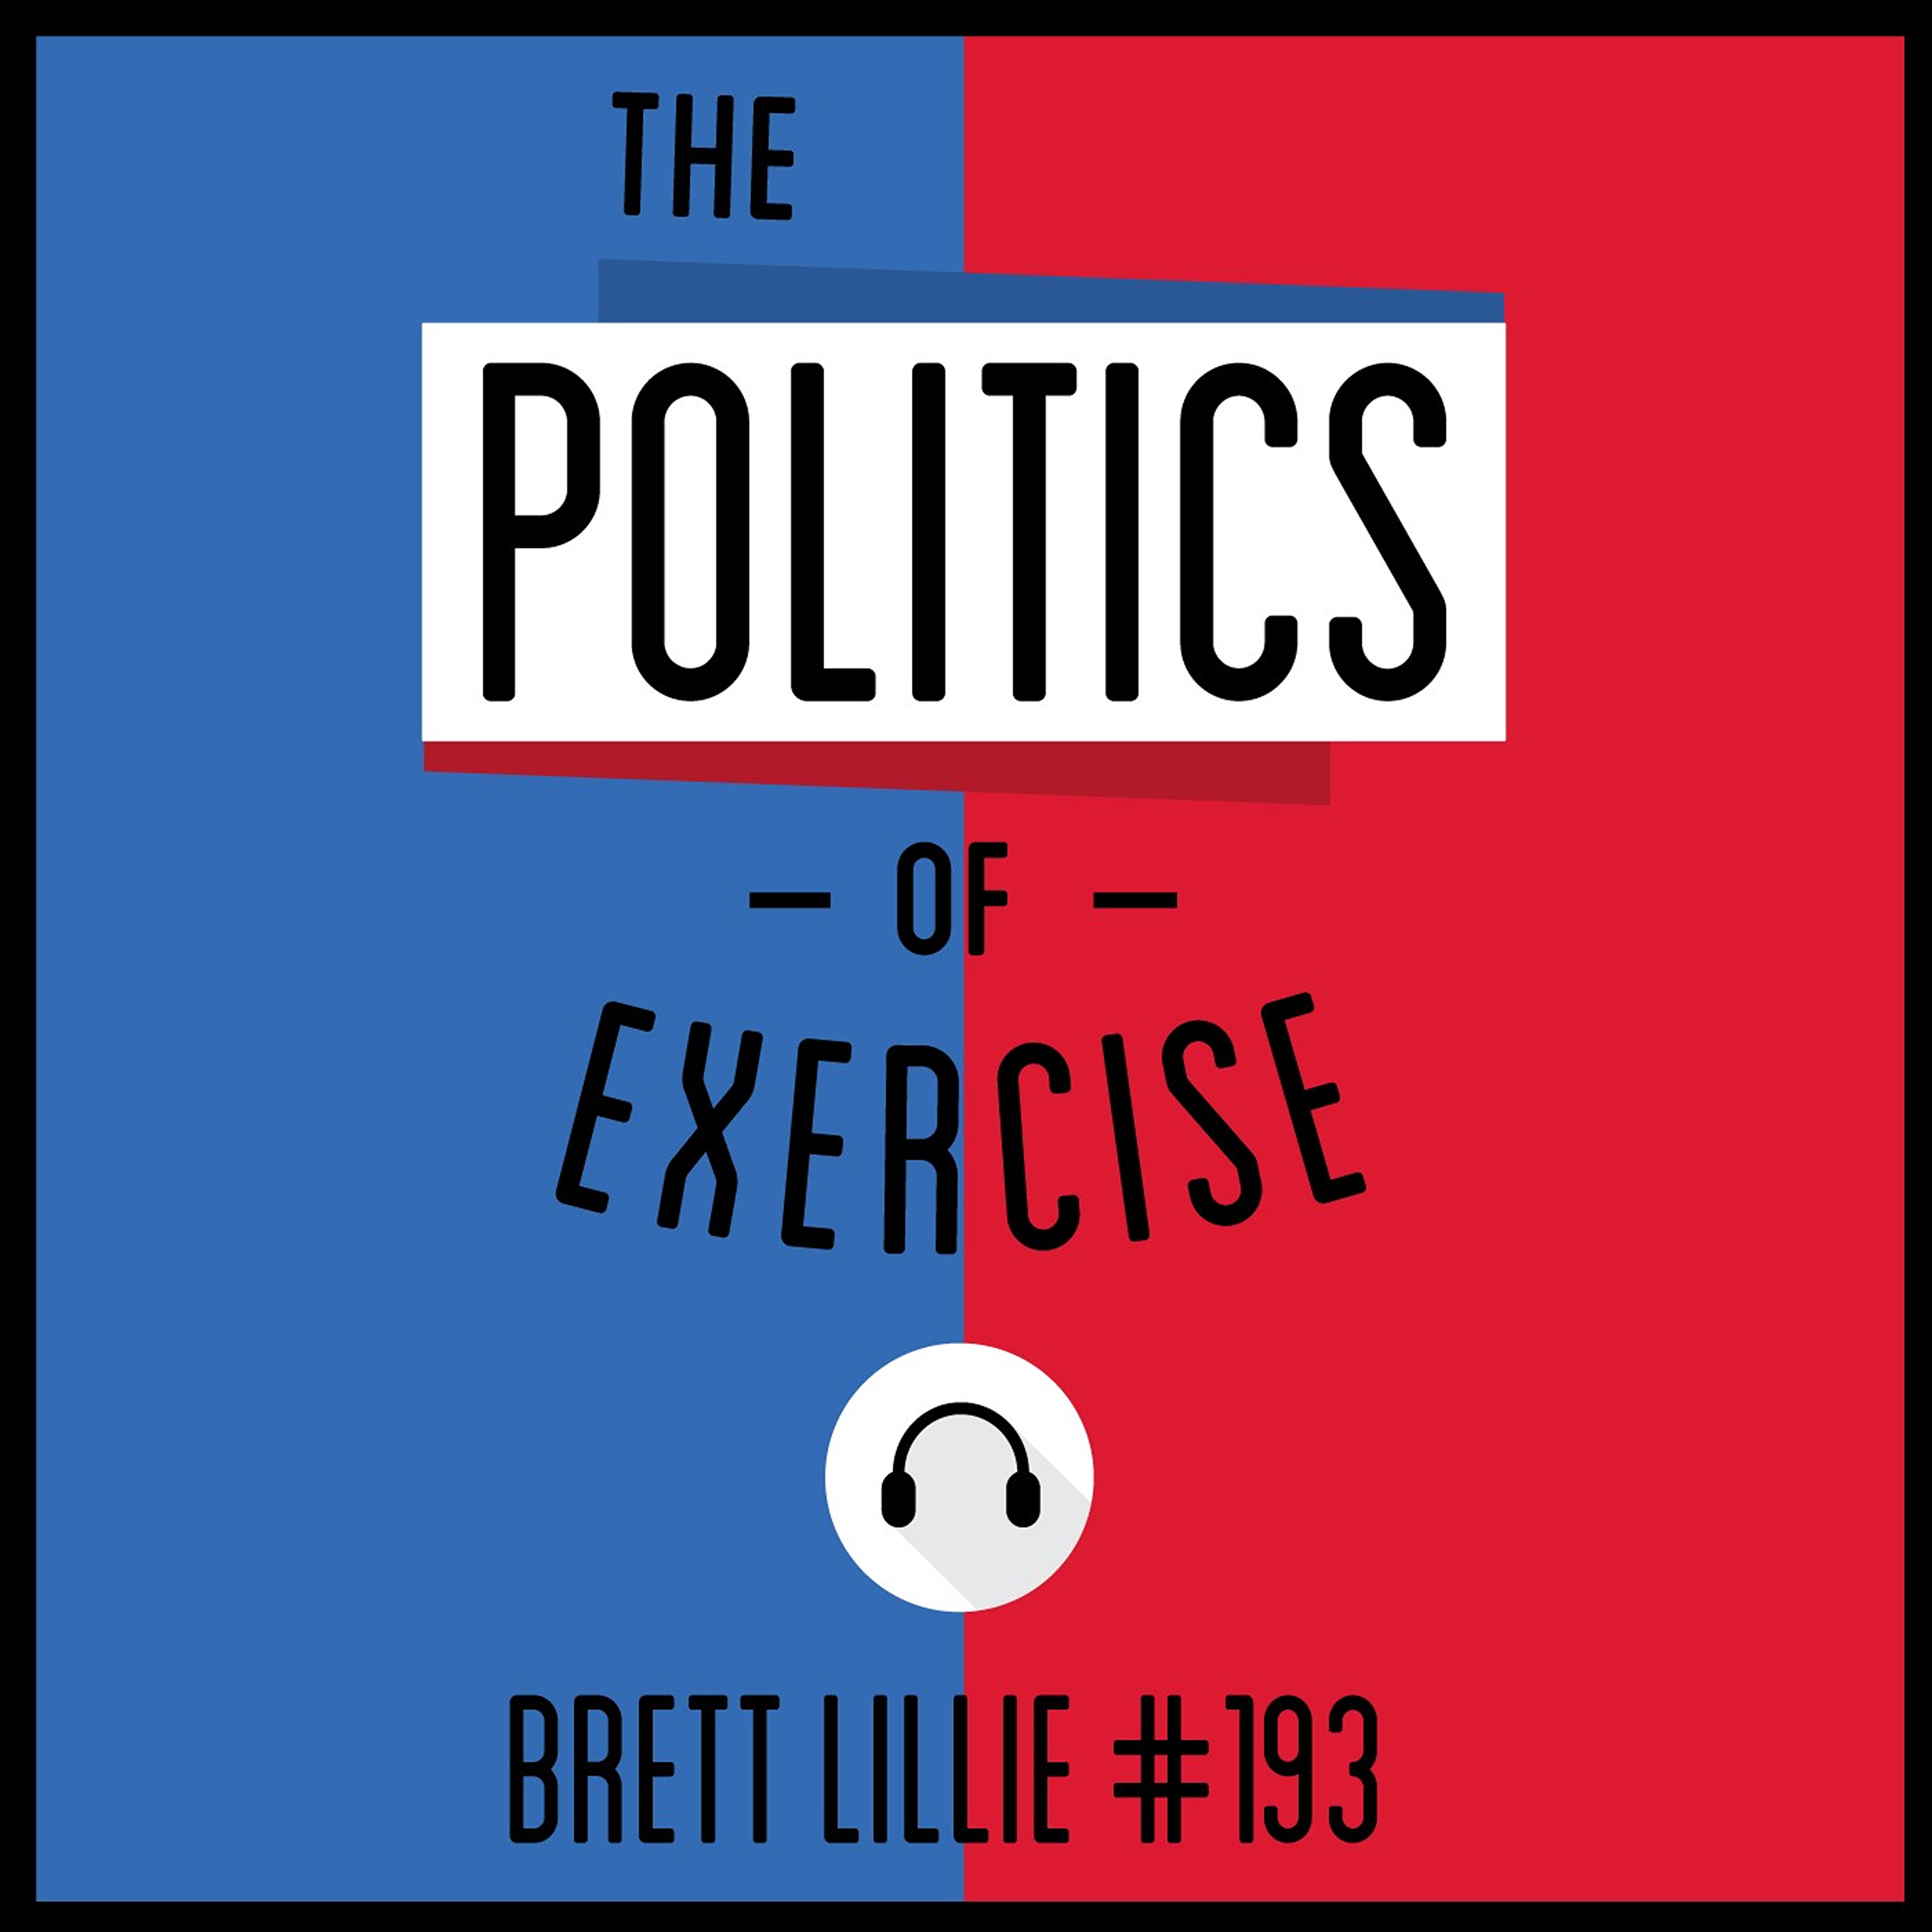 193: The Politics of Exercise - Brett Lillie